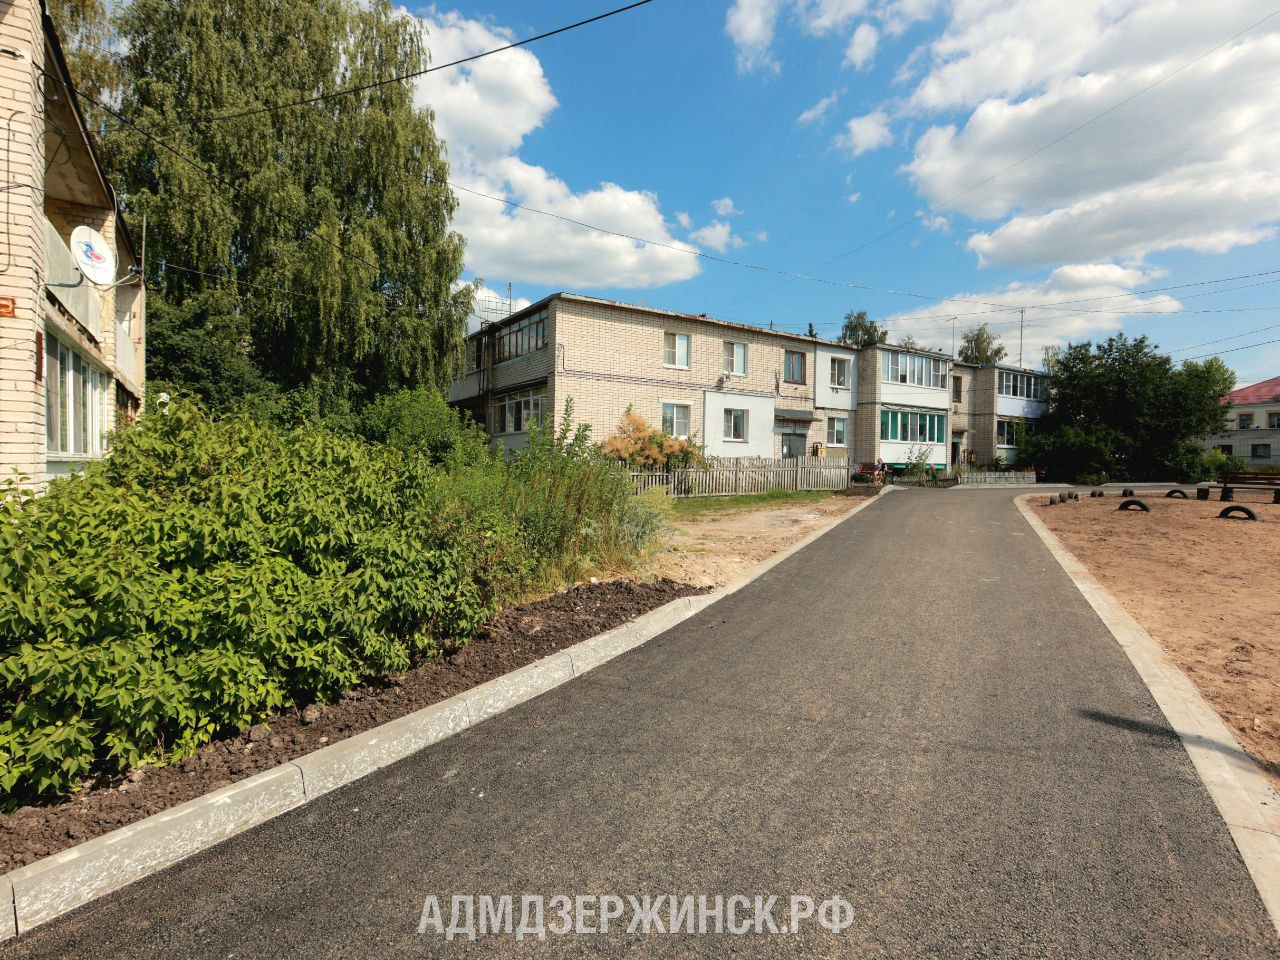 Более 69 млн рублей выделено на благоустройство 36 дворов Дзержинска - фото 1